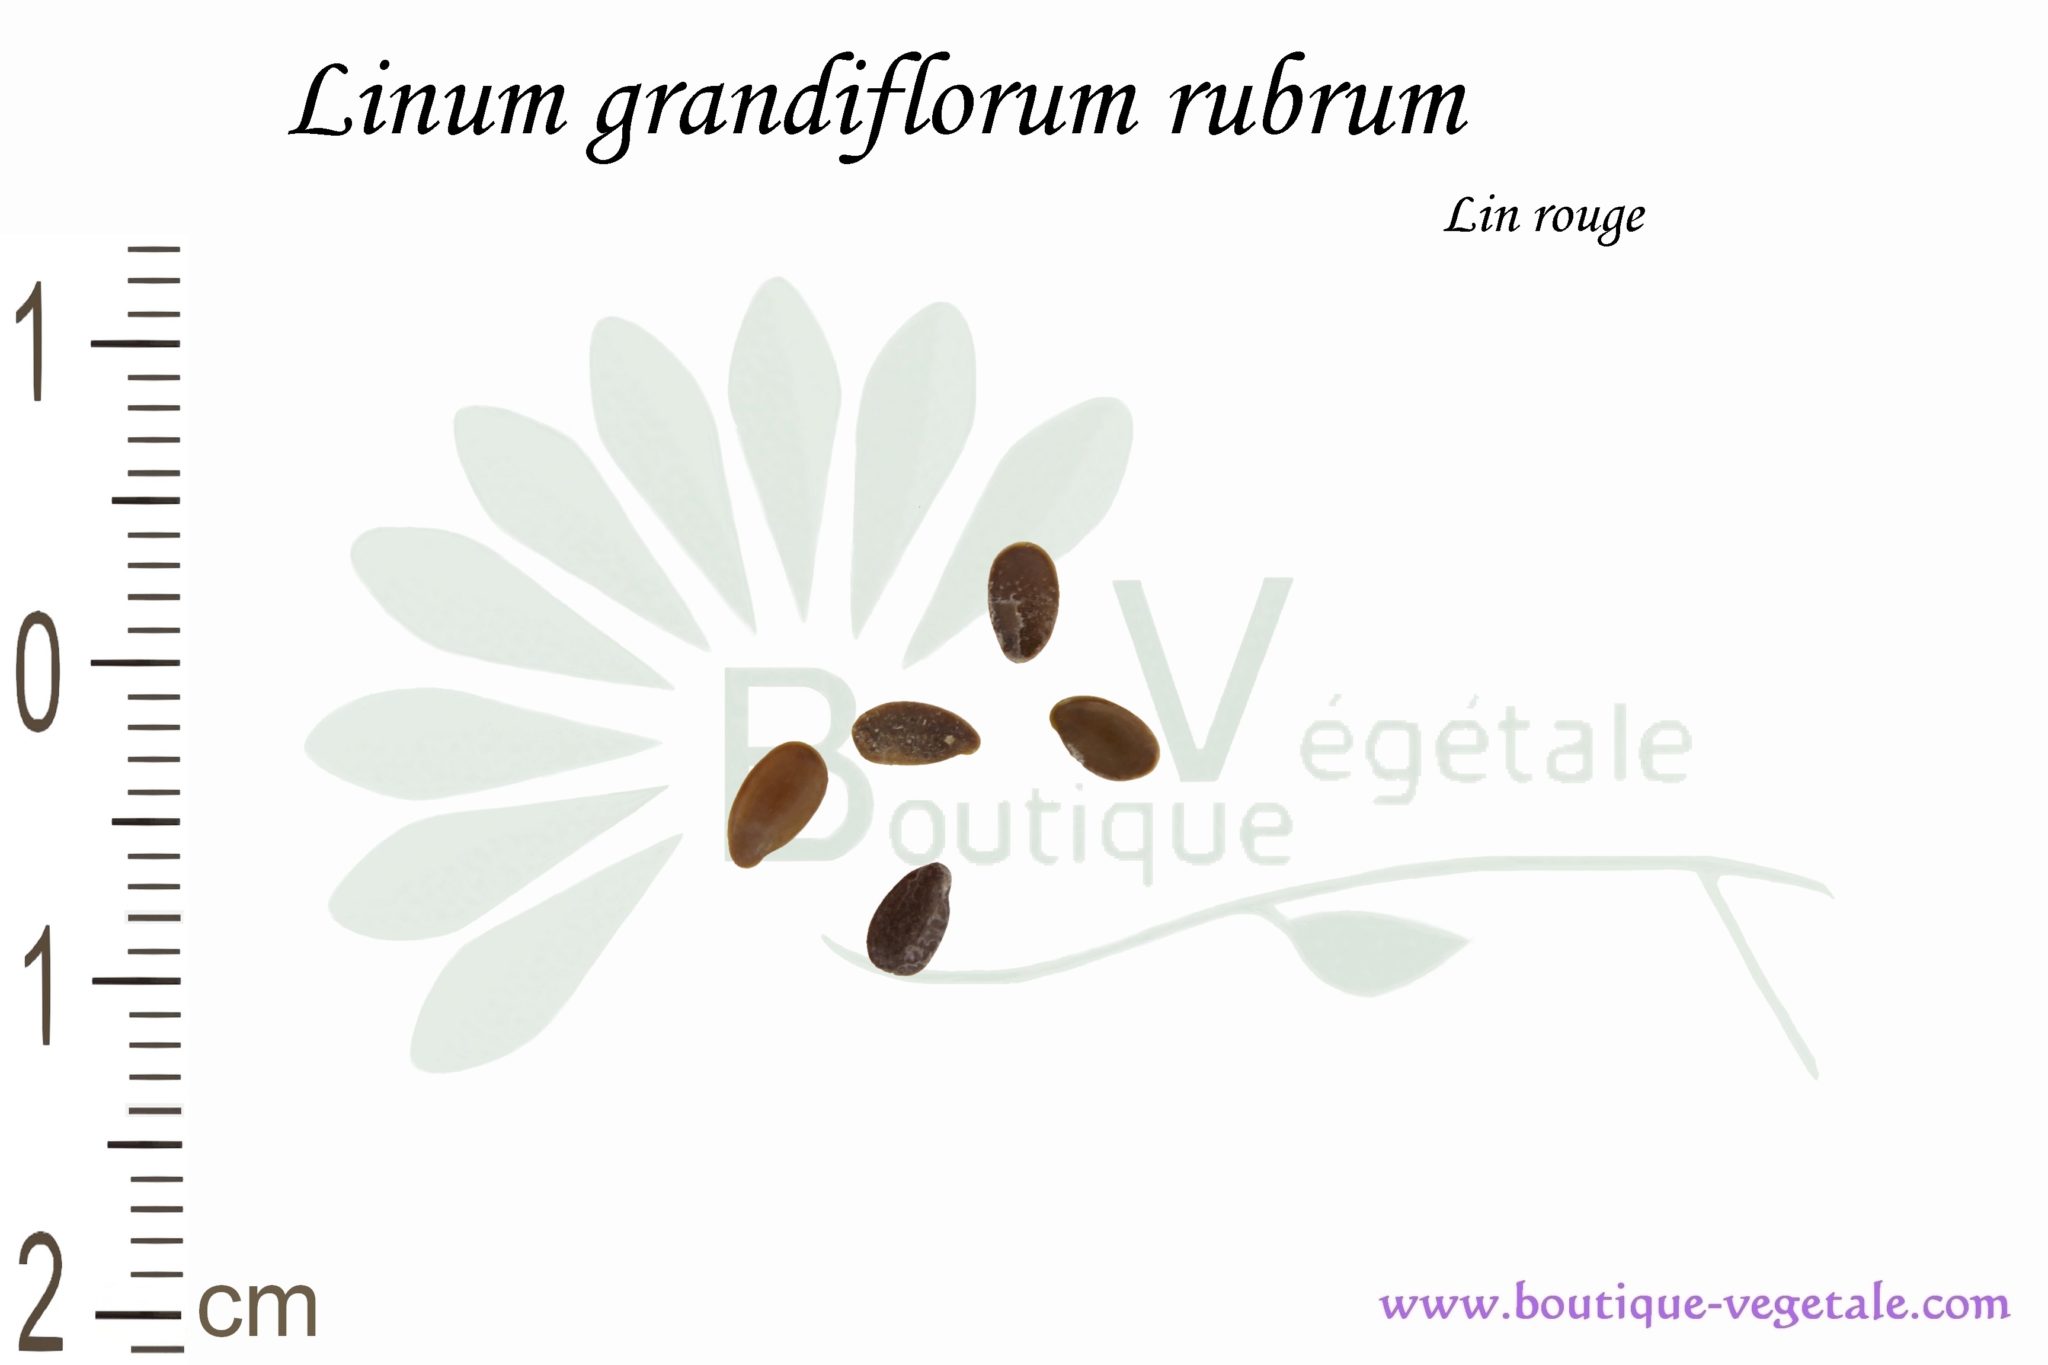 Other & unclassified - Ancien sachet de graines (vide à remplir) pour  commerce horticole grainetier Lin à grande fleur rouge Plante linum